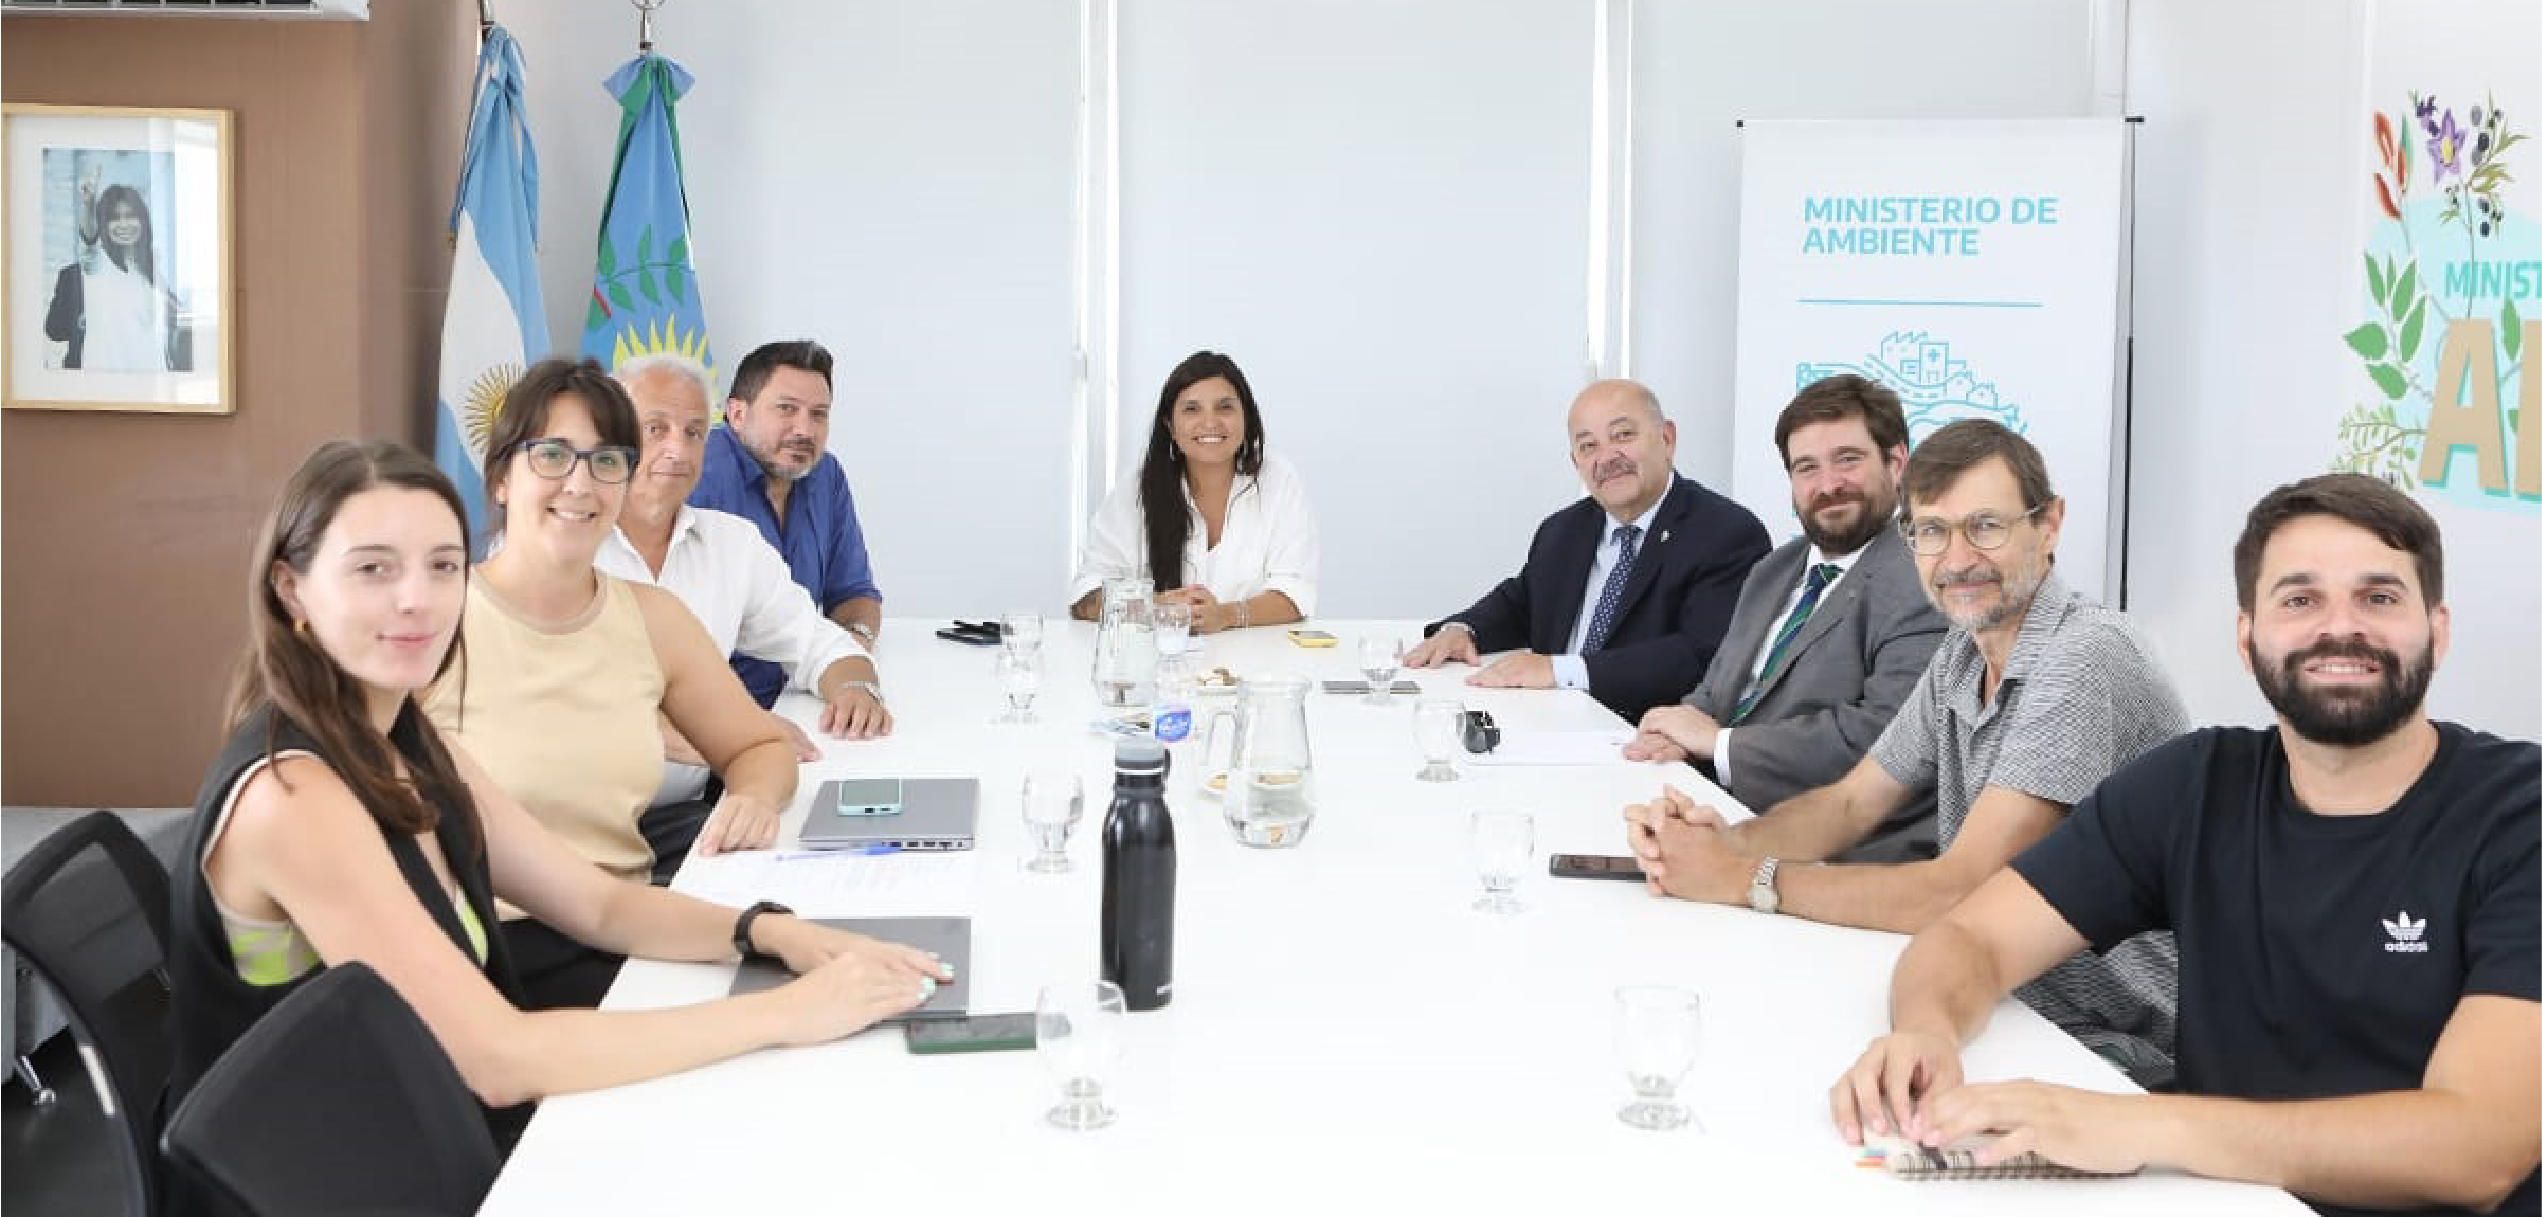 Reunión con la Ministra de Ambiente de la Provincia de Buenos Aires